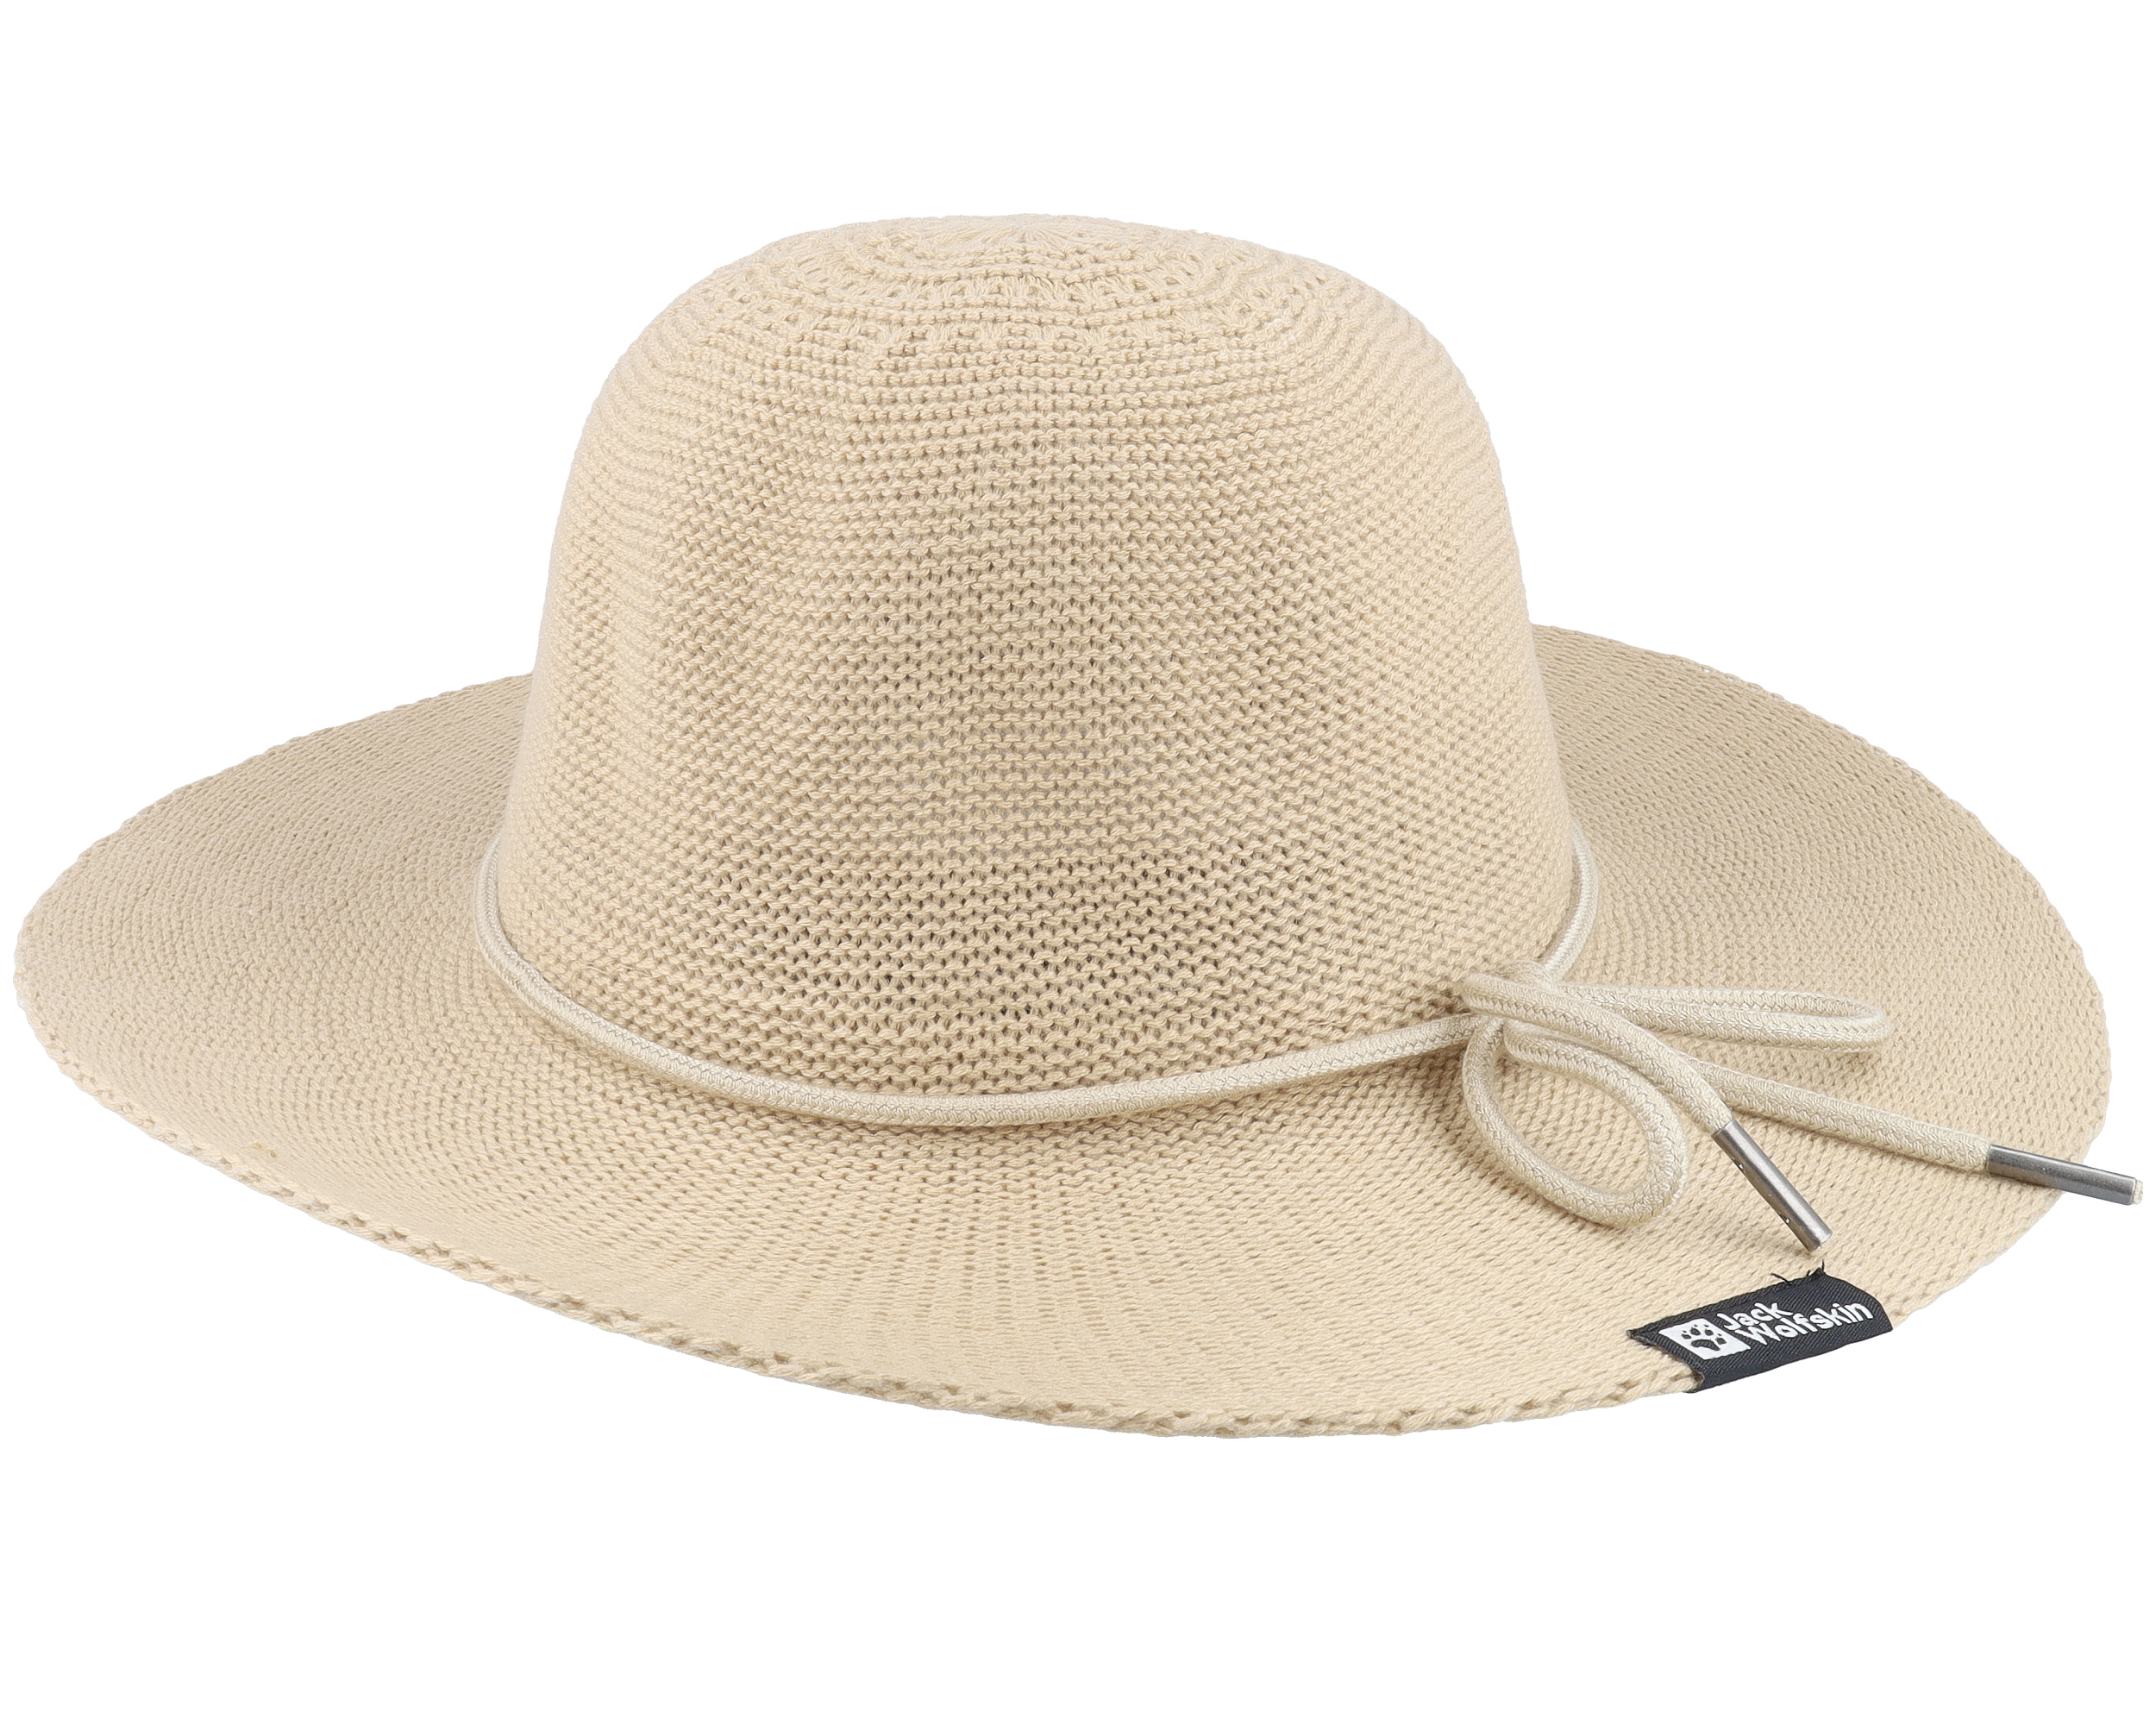 Travel Hat Women Nature Sun Hat - Jack Wolfskin